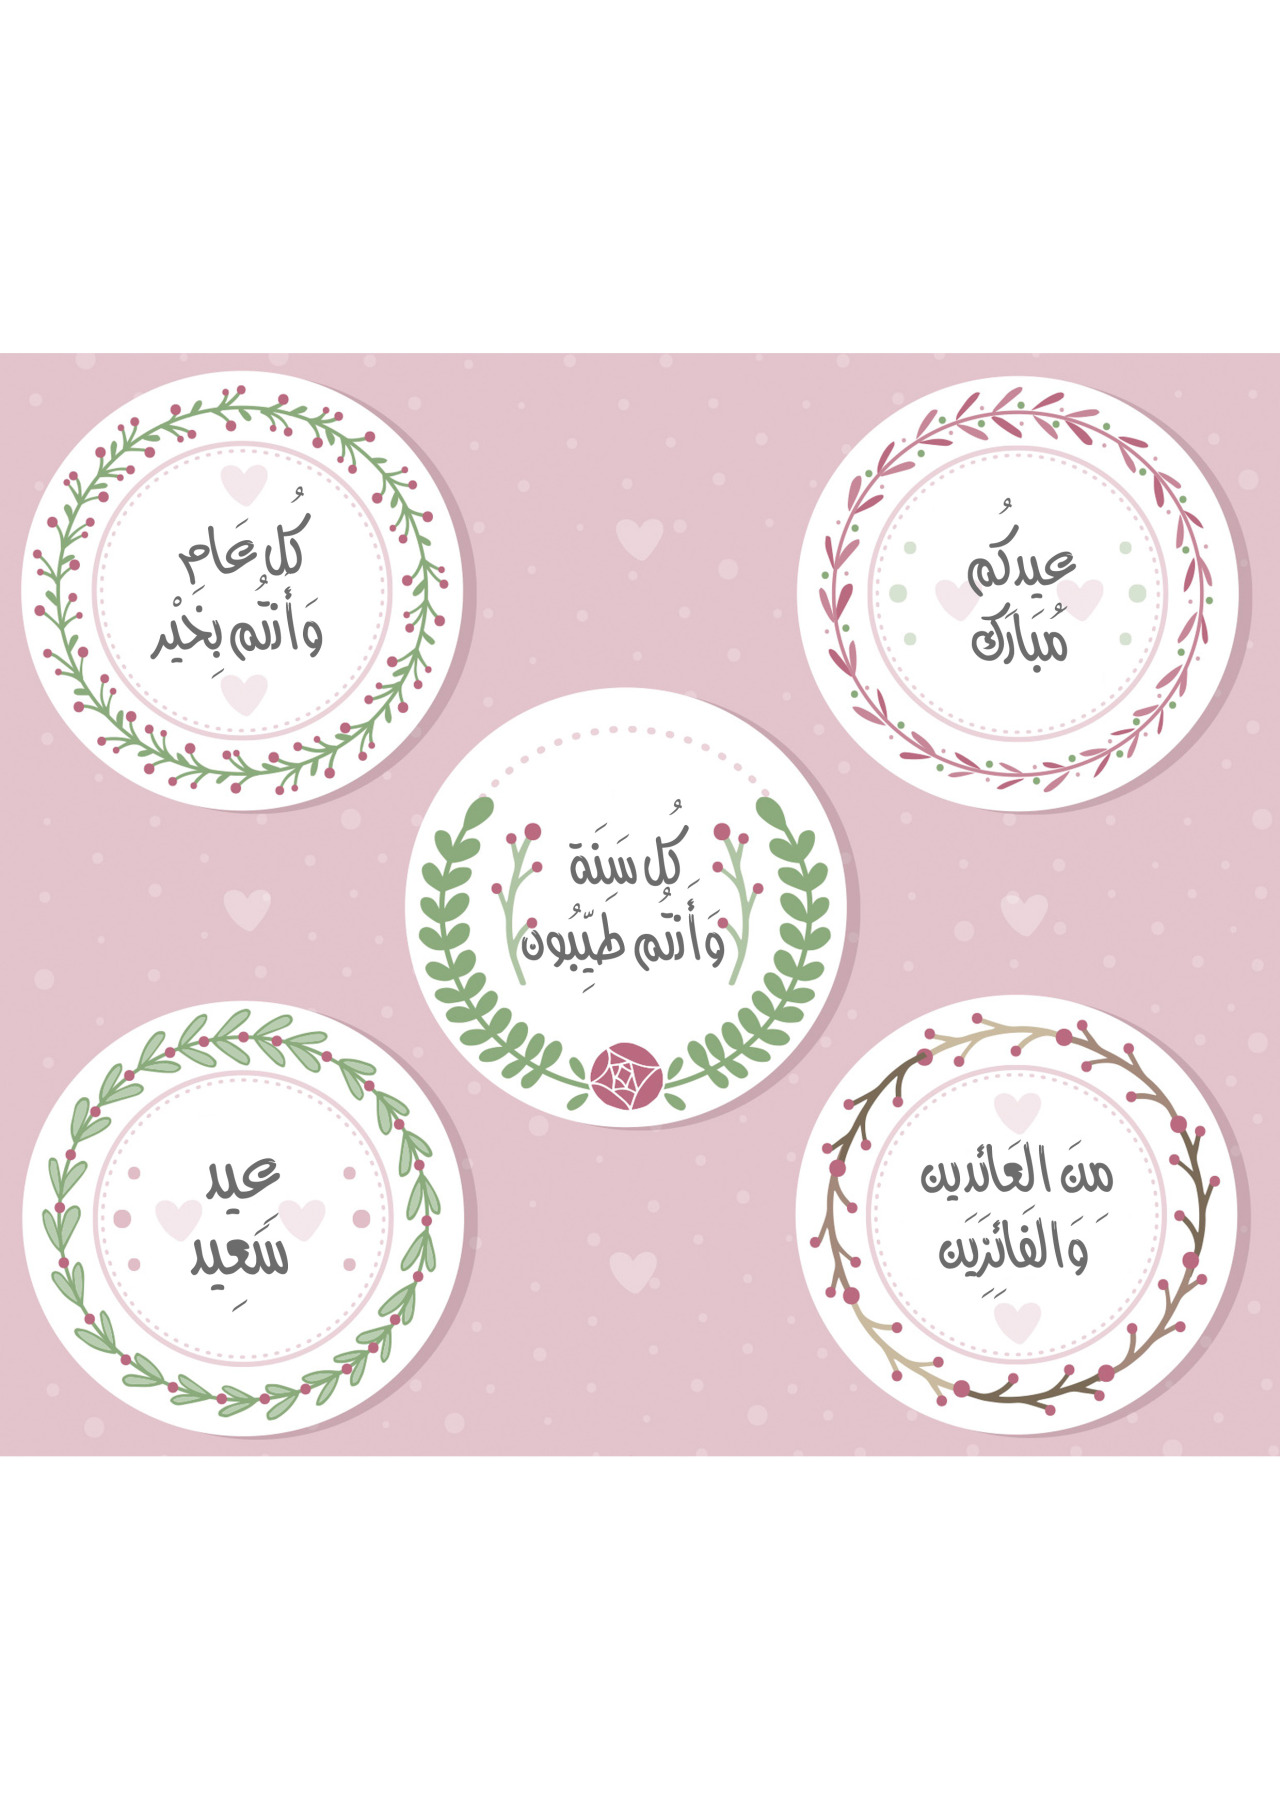 تَعلَّم 배워 Study مطبوعات بطاقات عيد الفطر Eid Fitr Greeting...